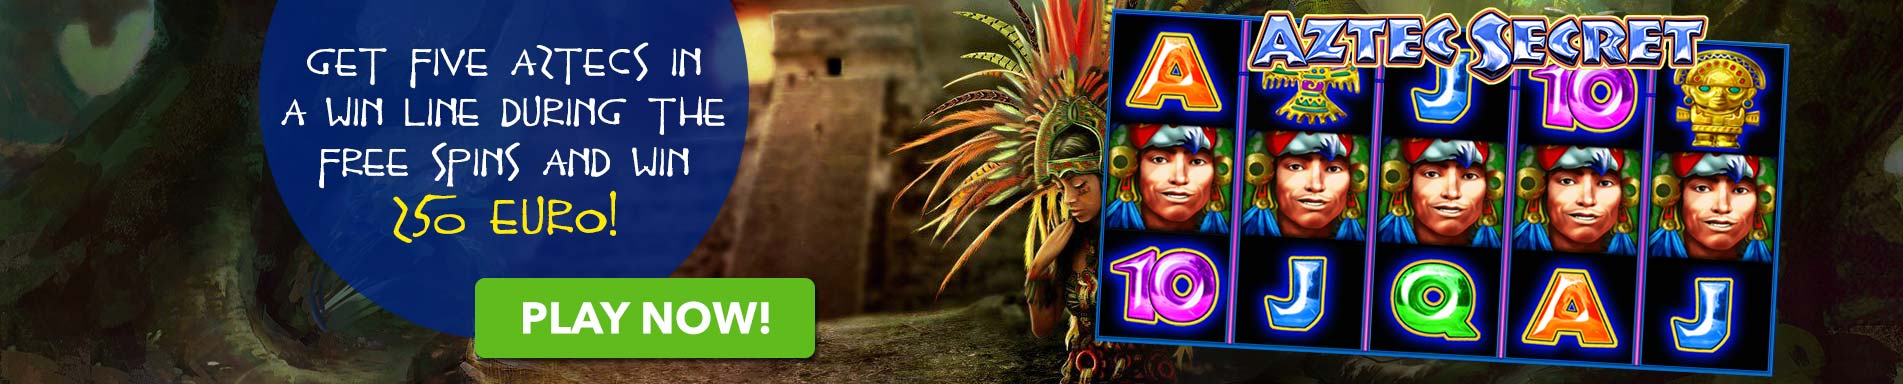 aztec-secrects-bonus-polder-casino